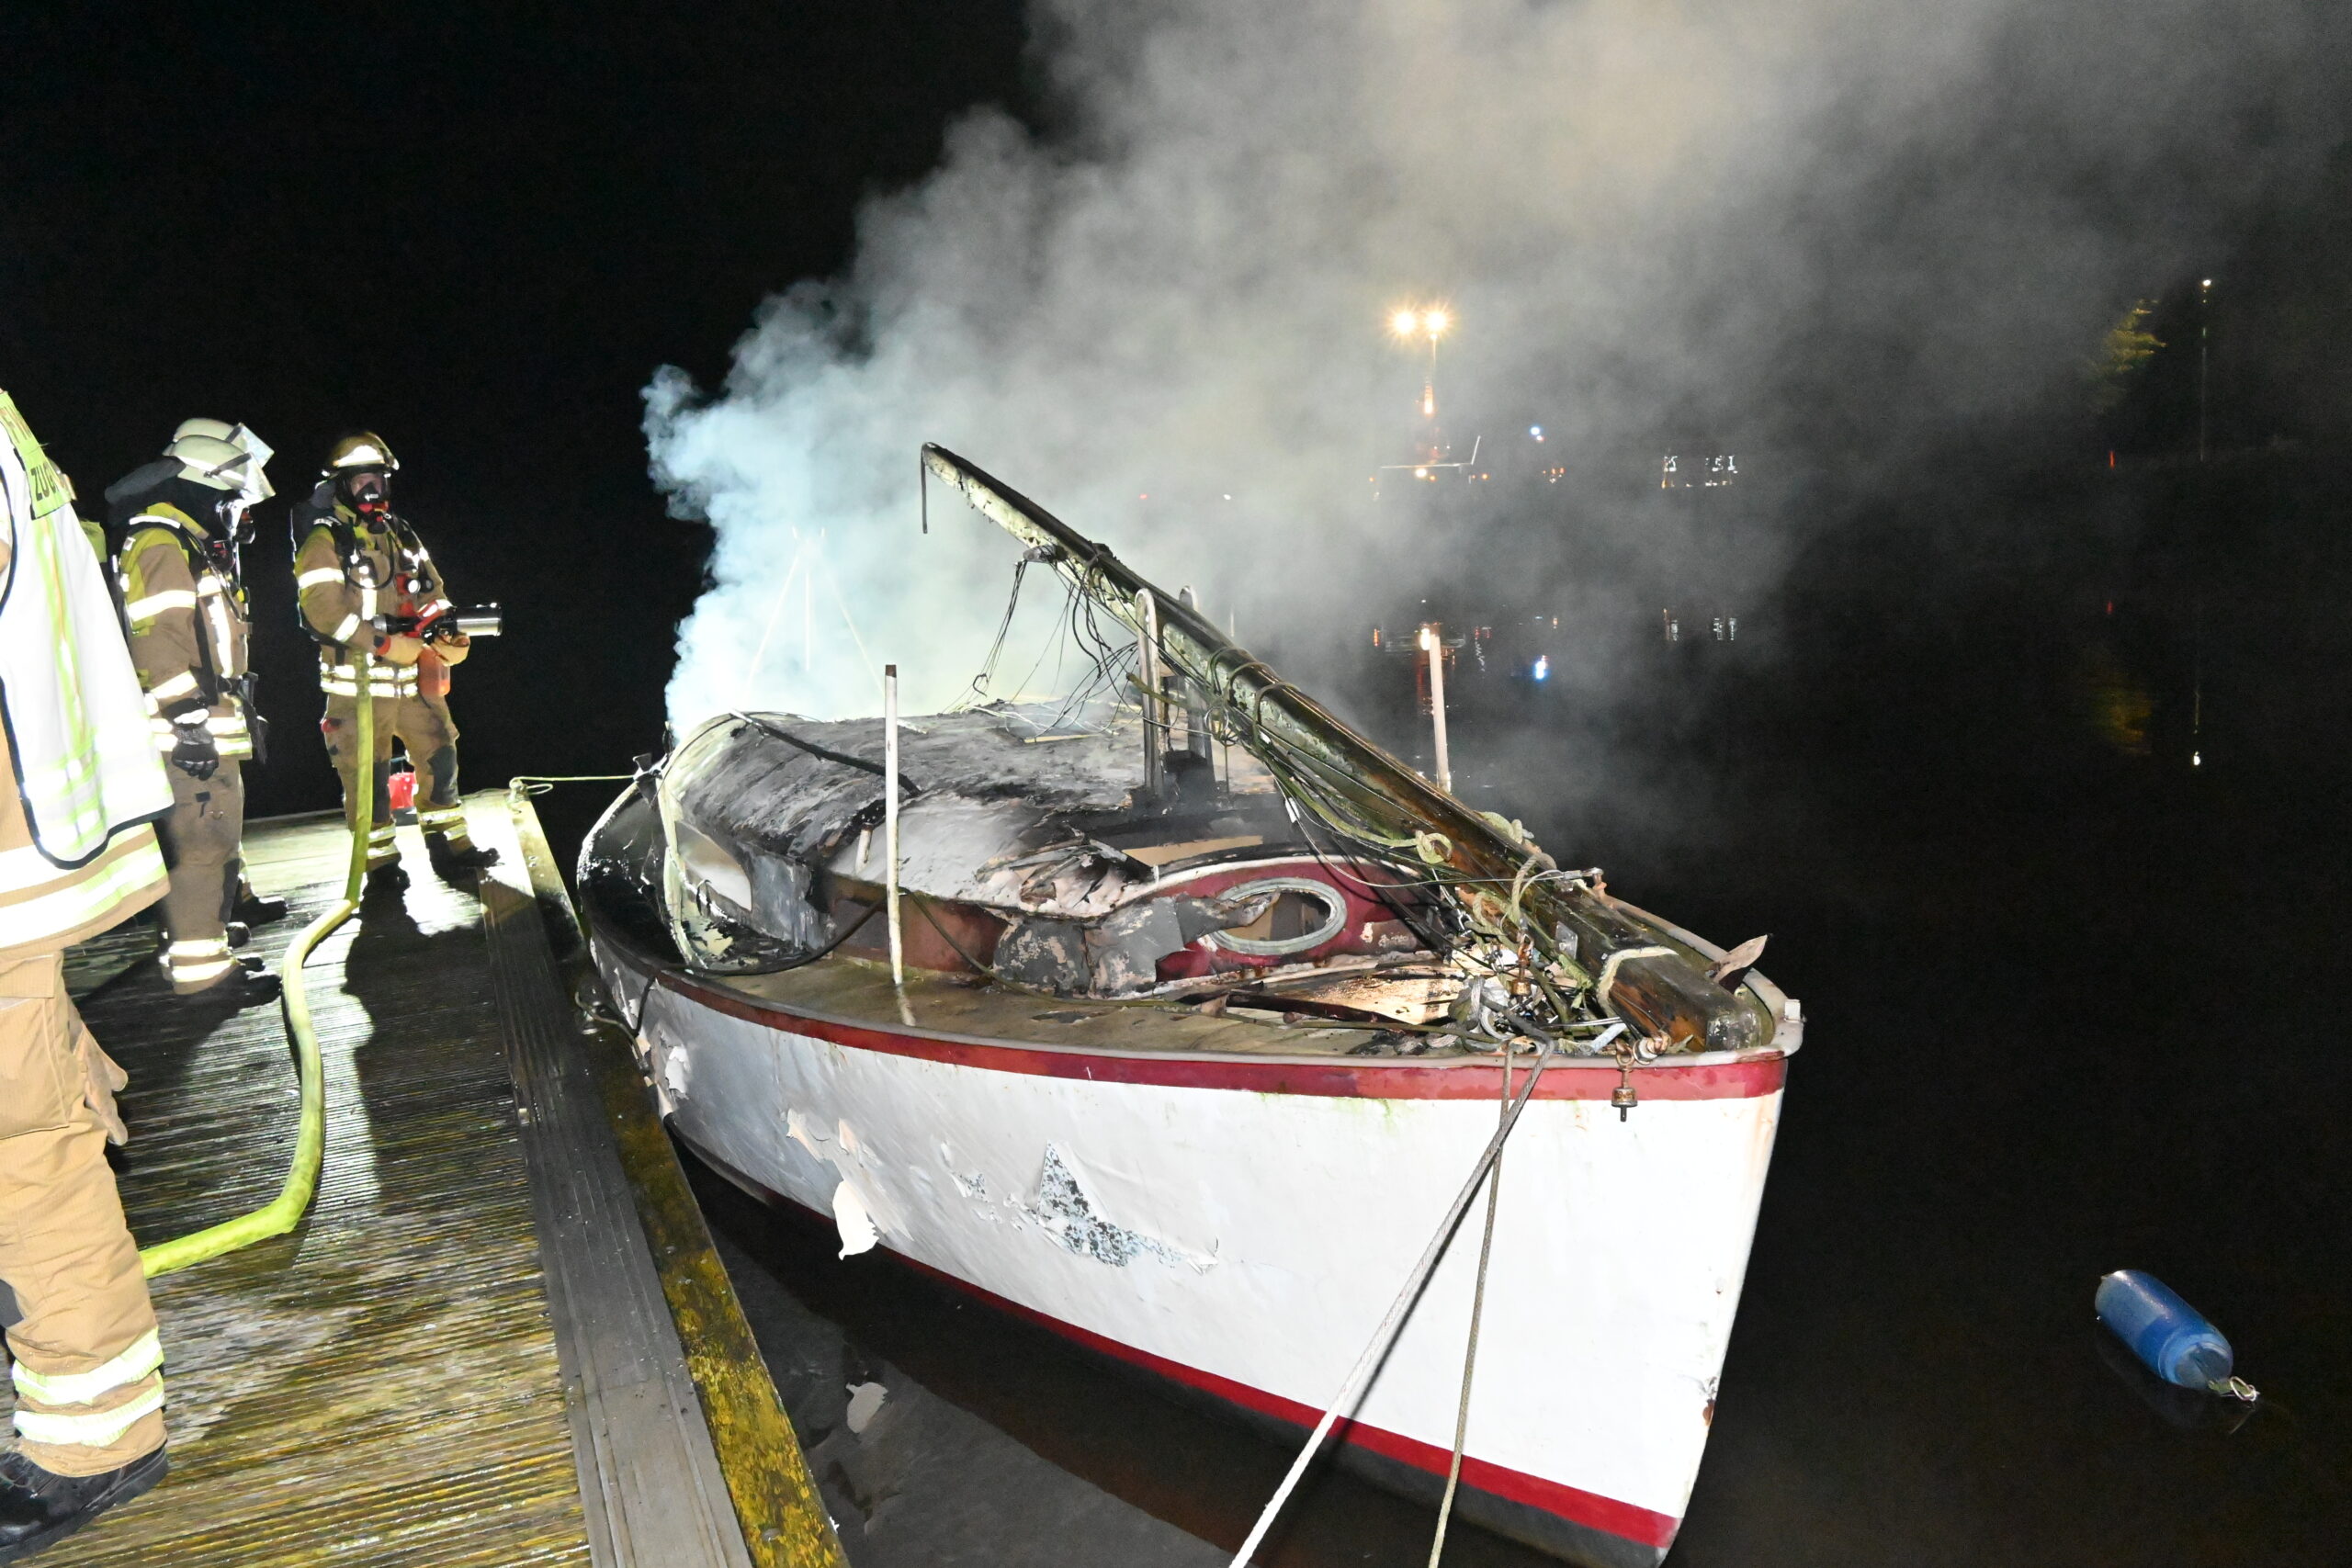 Das Boot im Stader Hafen konnte nicht mehr gerettet werden, der Besitzer wurde bei dem Brand leicht verletzt.